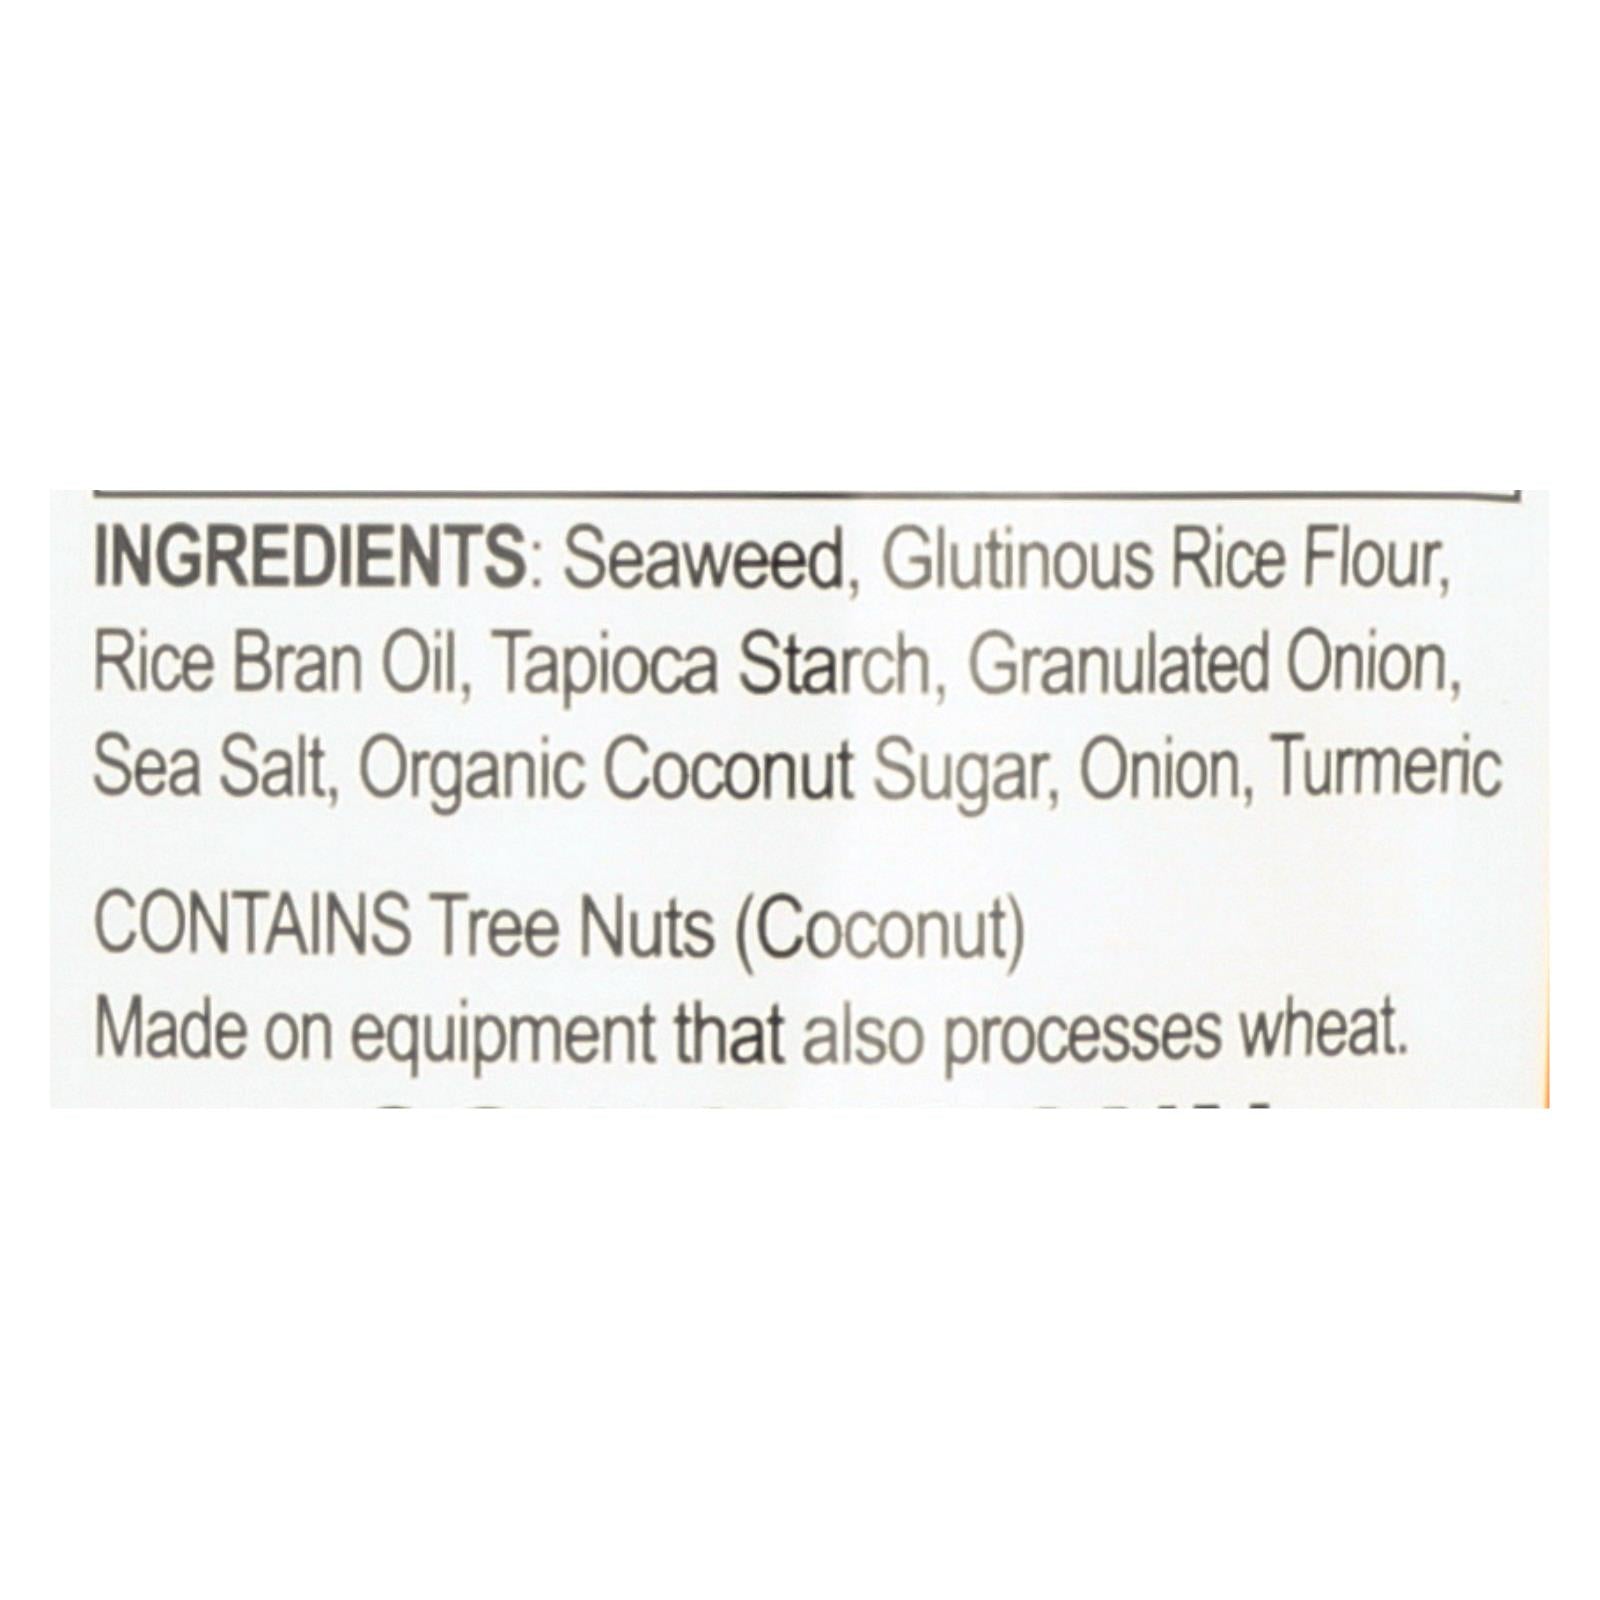 Seasnax Chomperz Onion Crunchy Seaweed Chips  - Case Of 8 - 1 Oz